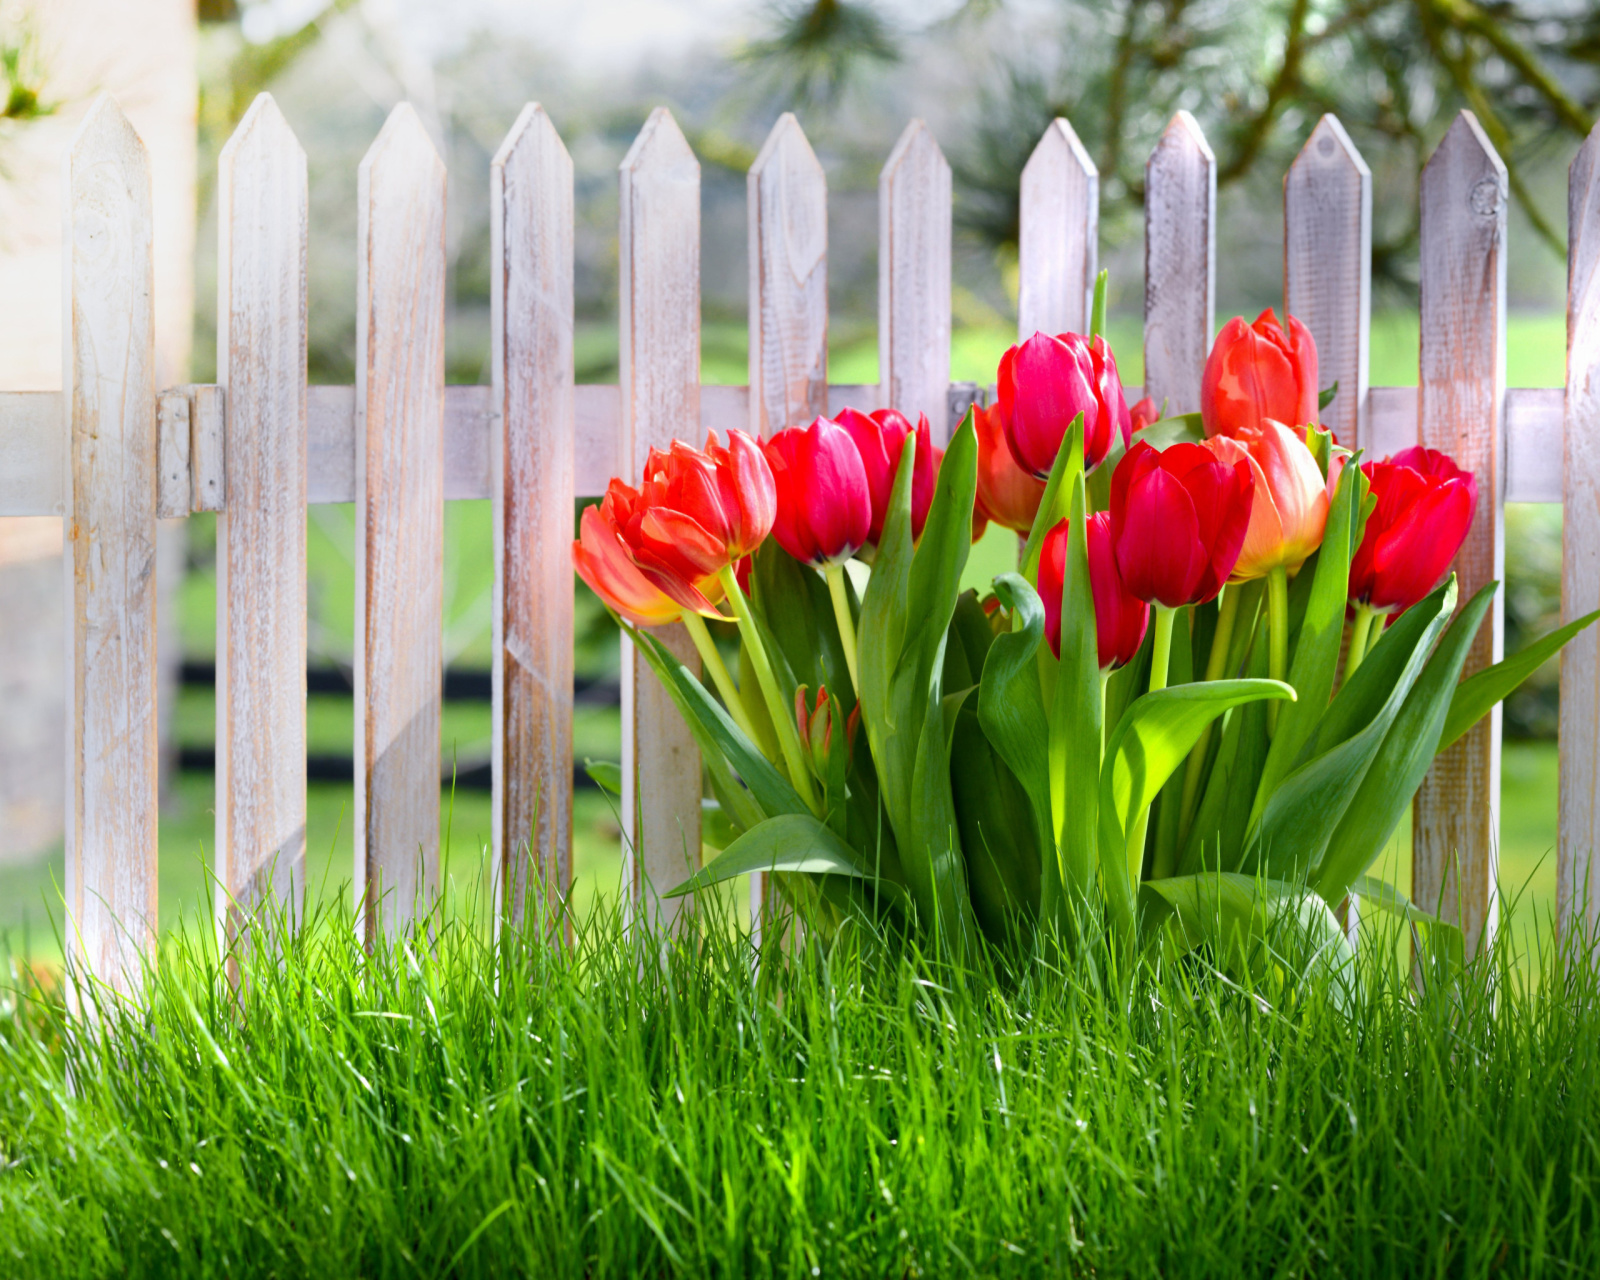 Tulips in Garden screenshot #1 1600x1280